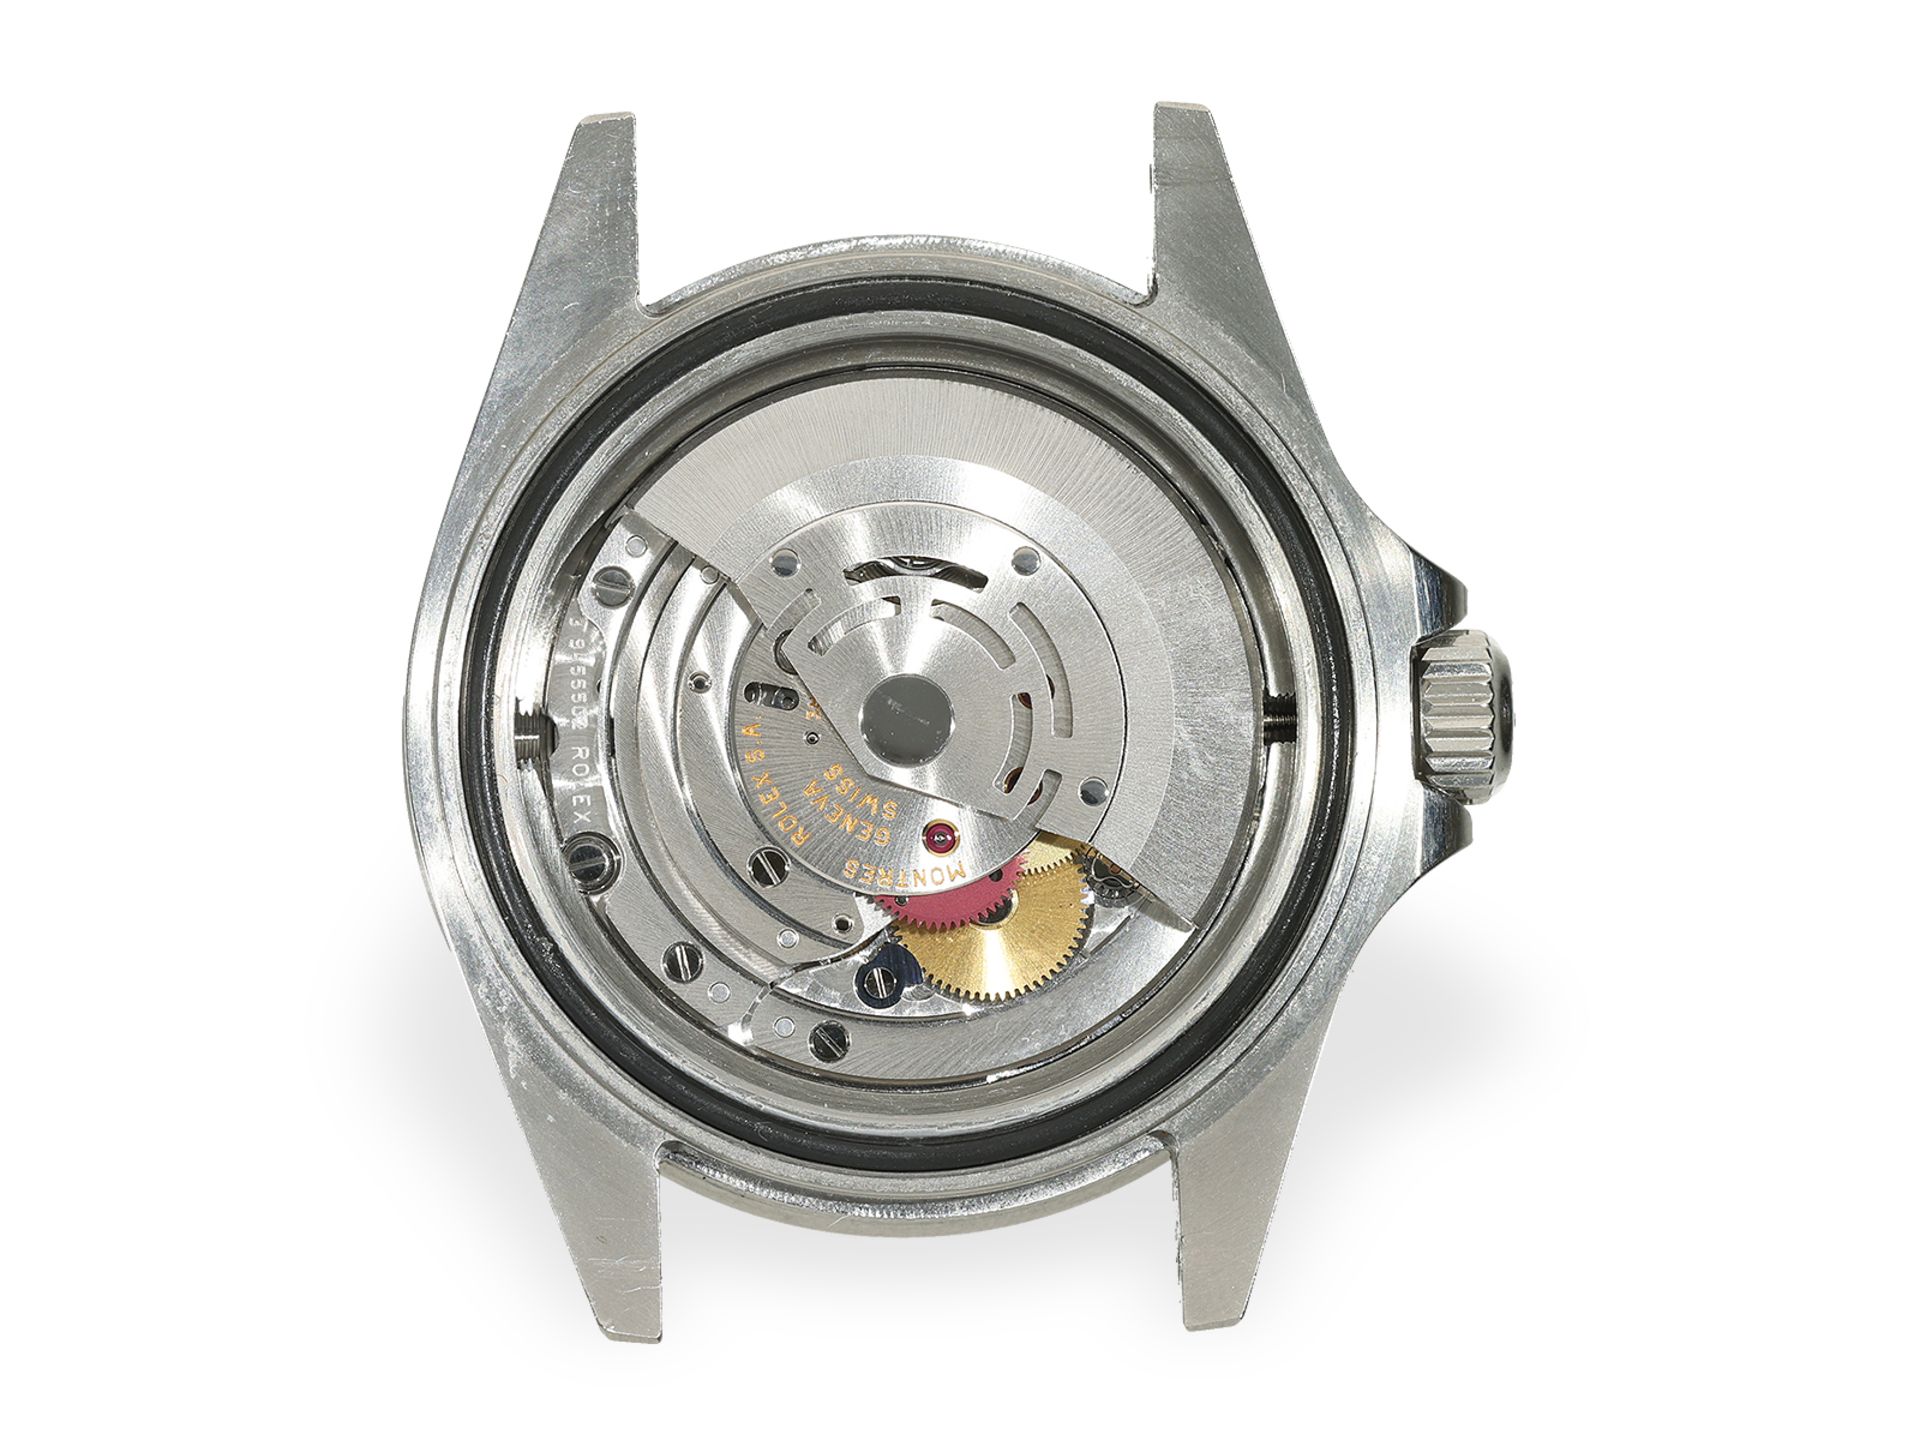 Armbanduhr: Rolex Sea-Dweller REF. 16600, Stahl, Box & Papiere, 2002/2003 - Bild 6 aus 10